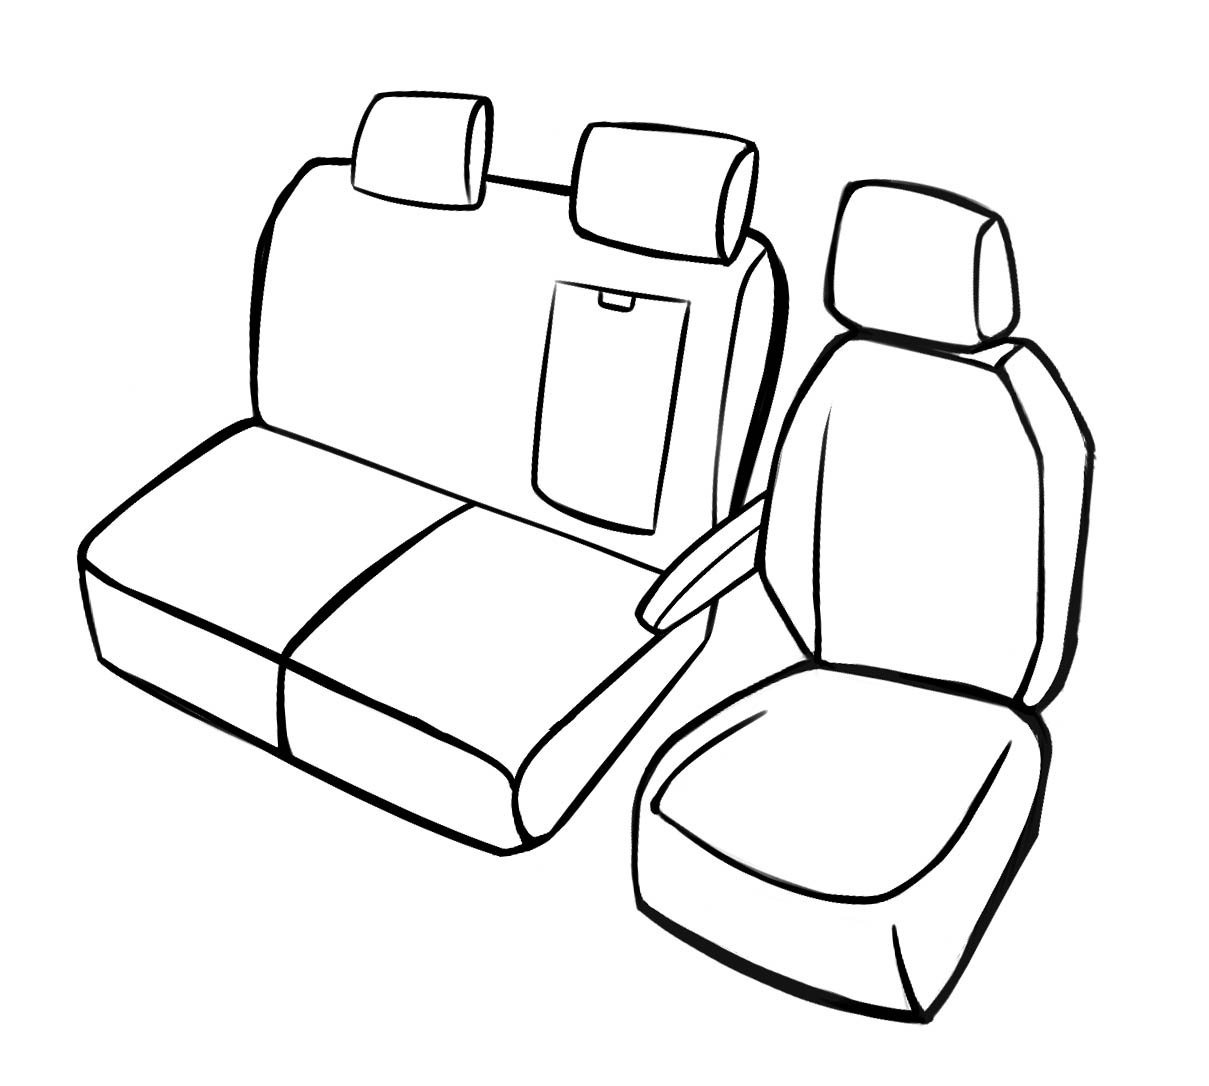 Premium autozetelhoezen compatibel met Ford Transit enkele zetel en dubbele bank vooraan in kunstleder vanaf bouwjaar 2013 - Vandaag